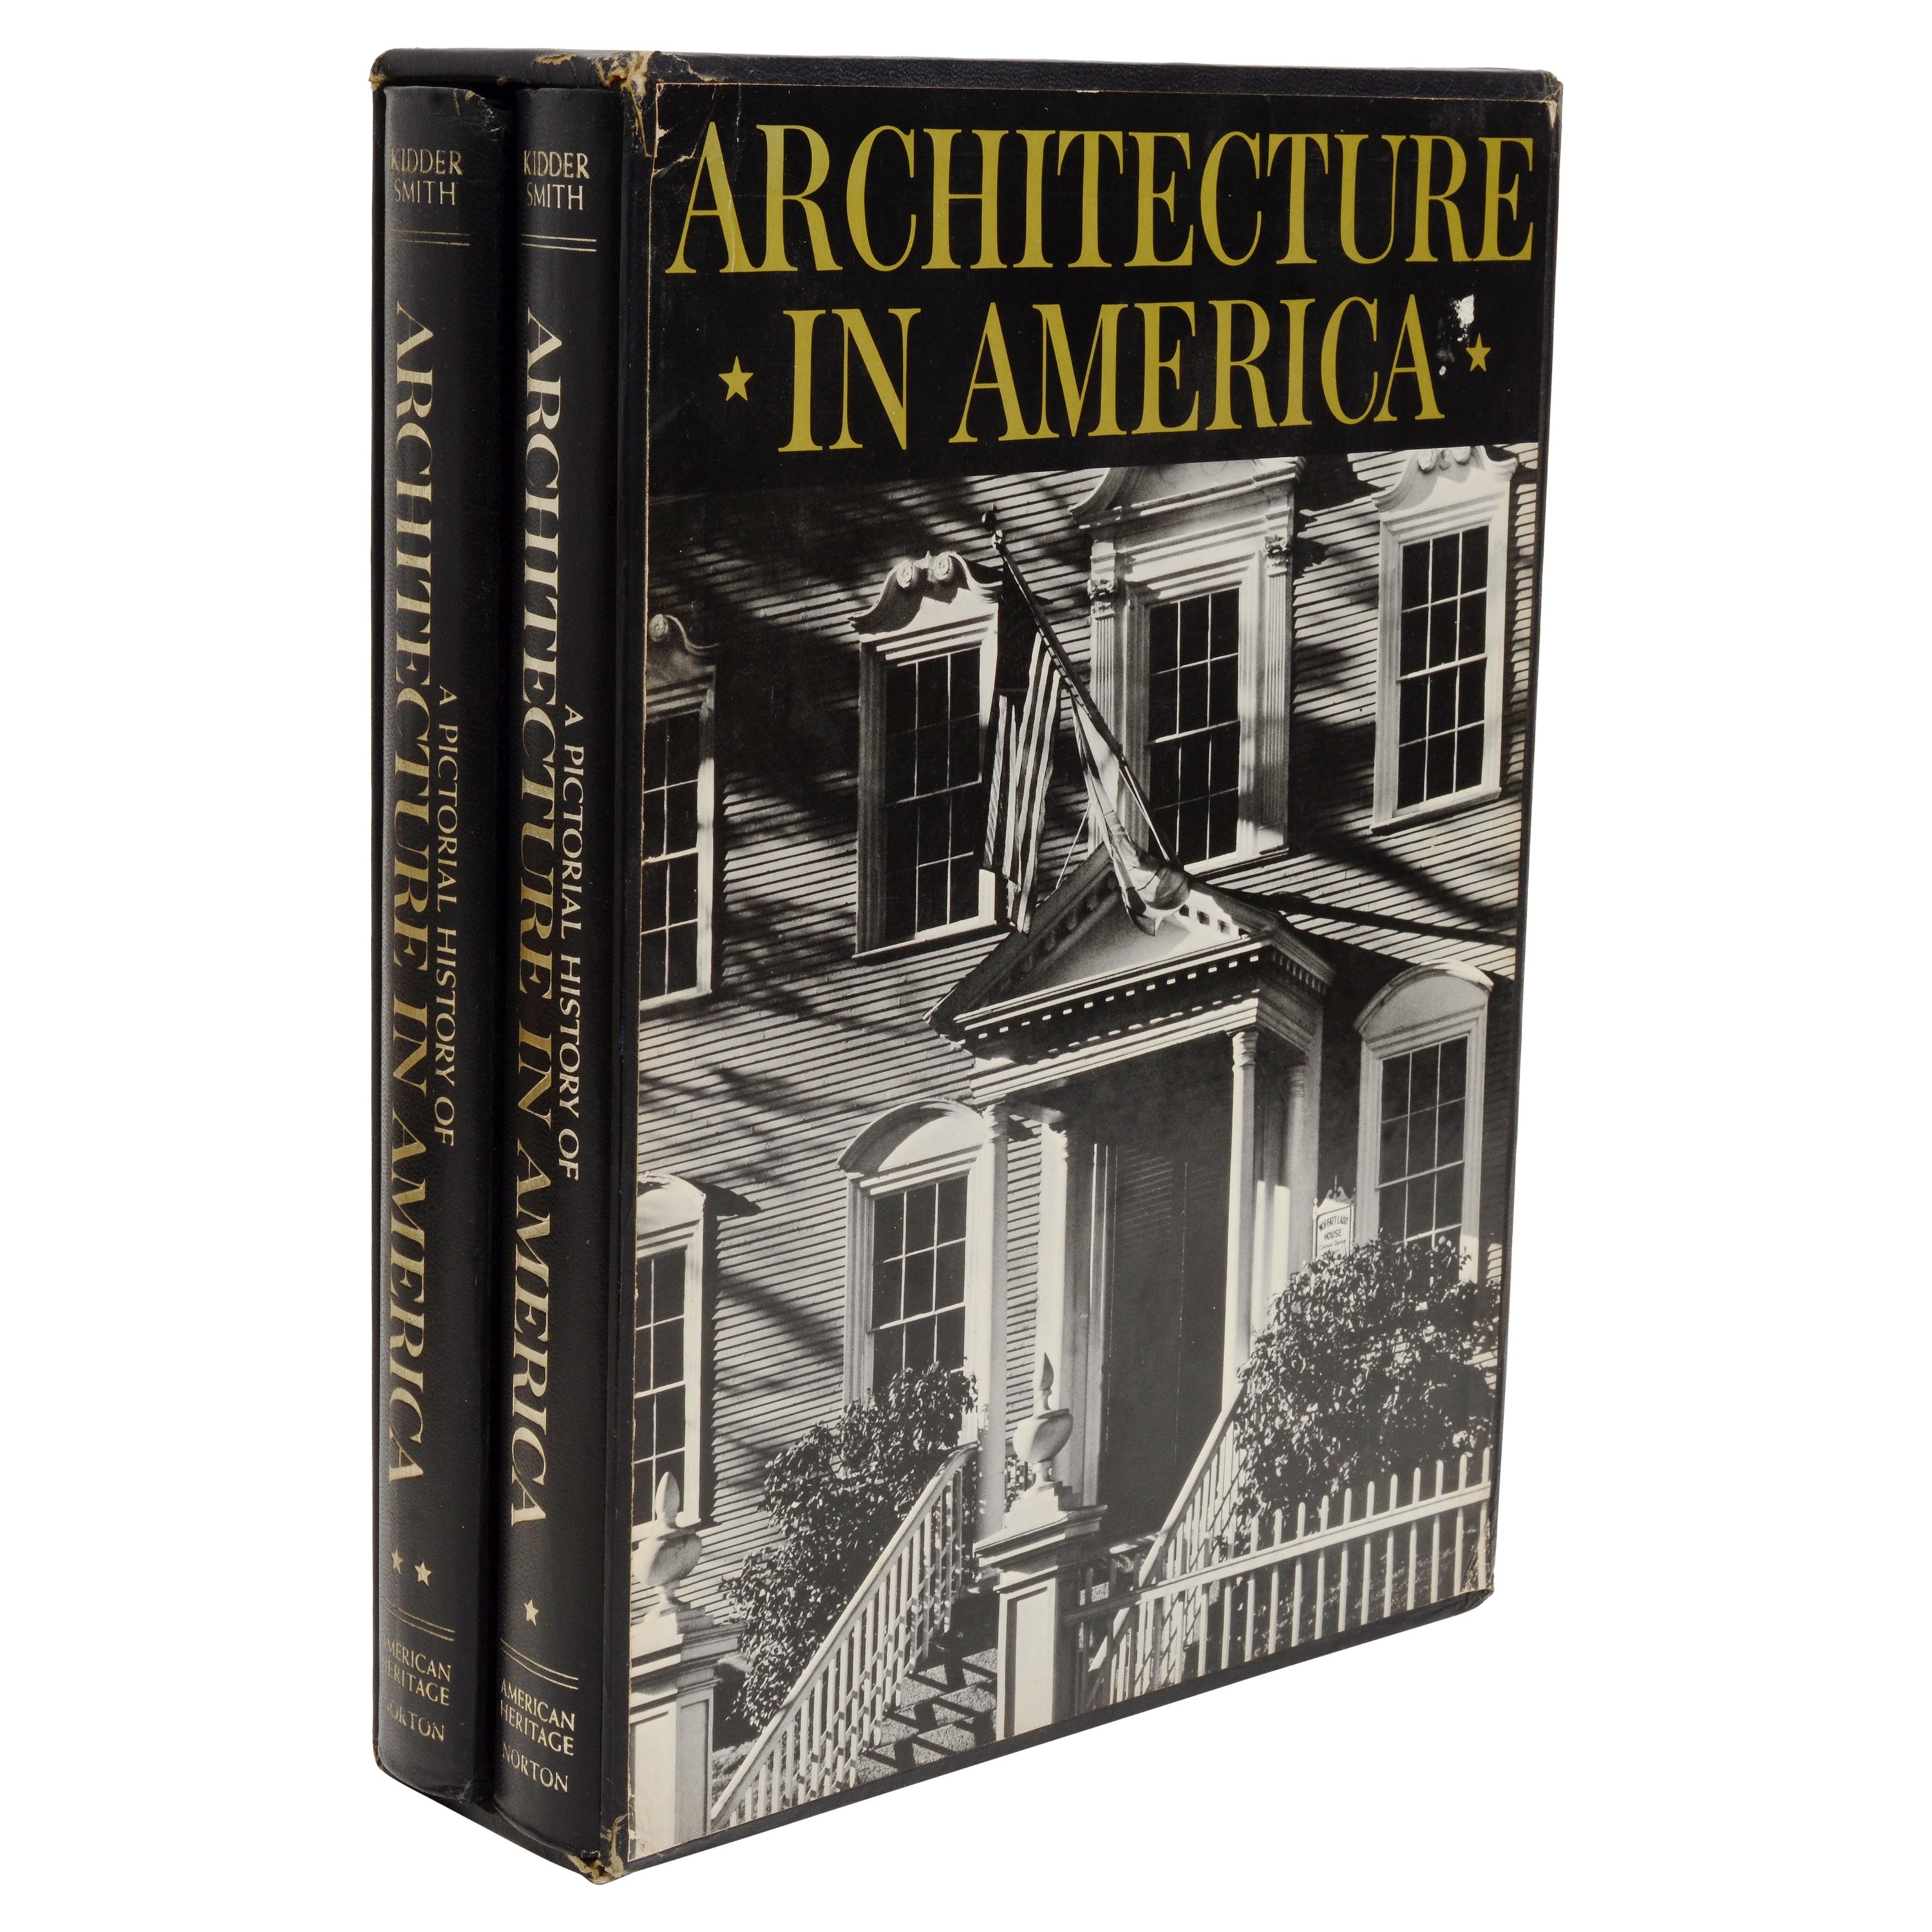 L'histoire picturale de l'architecture en Amérique par G. E. Kidder Smith, 1ère édition